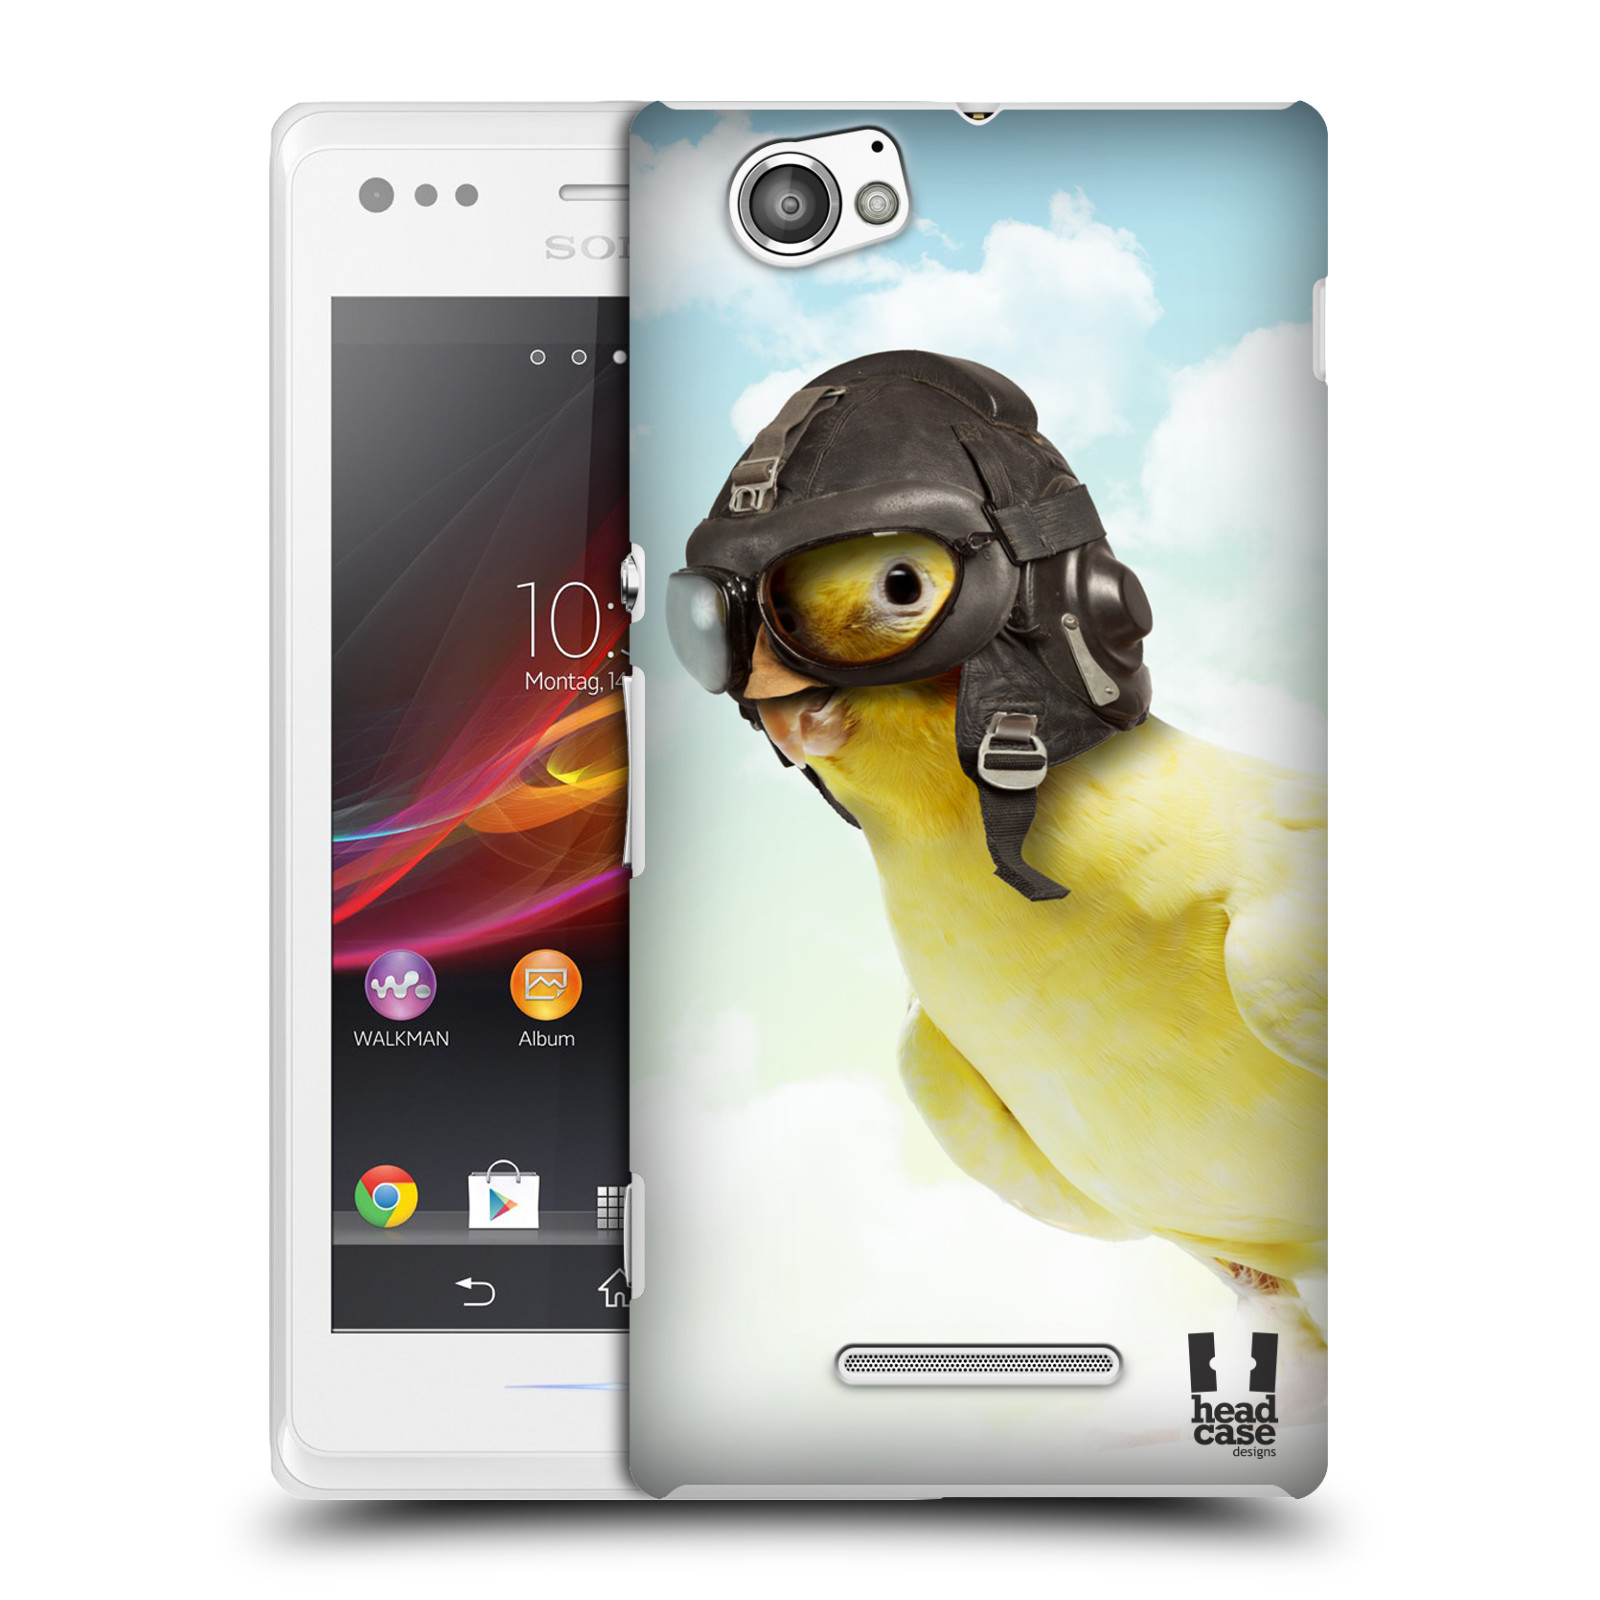 HEAD CASE plastový obal na mobil Sony Xperia M vzor Legrační zvířátka ptáček letec